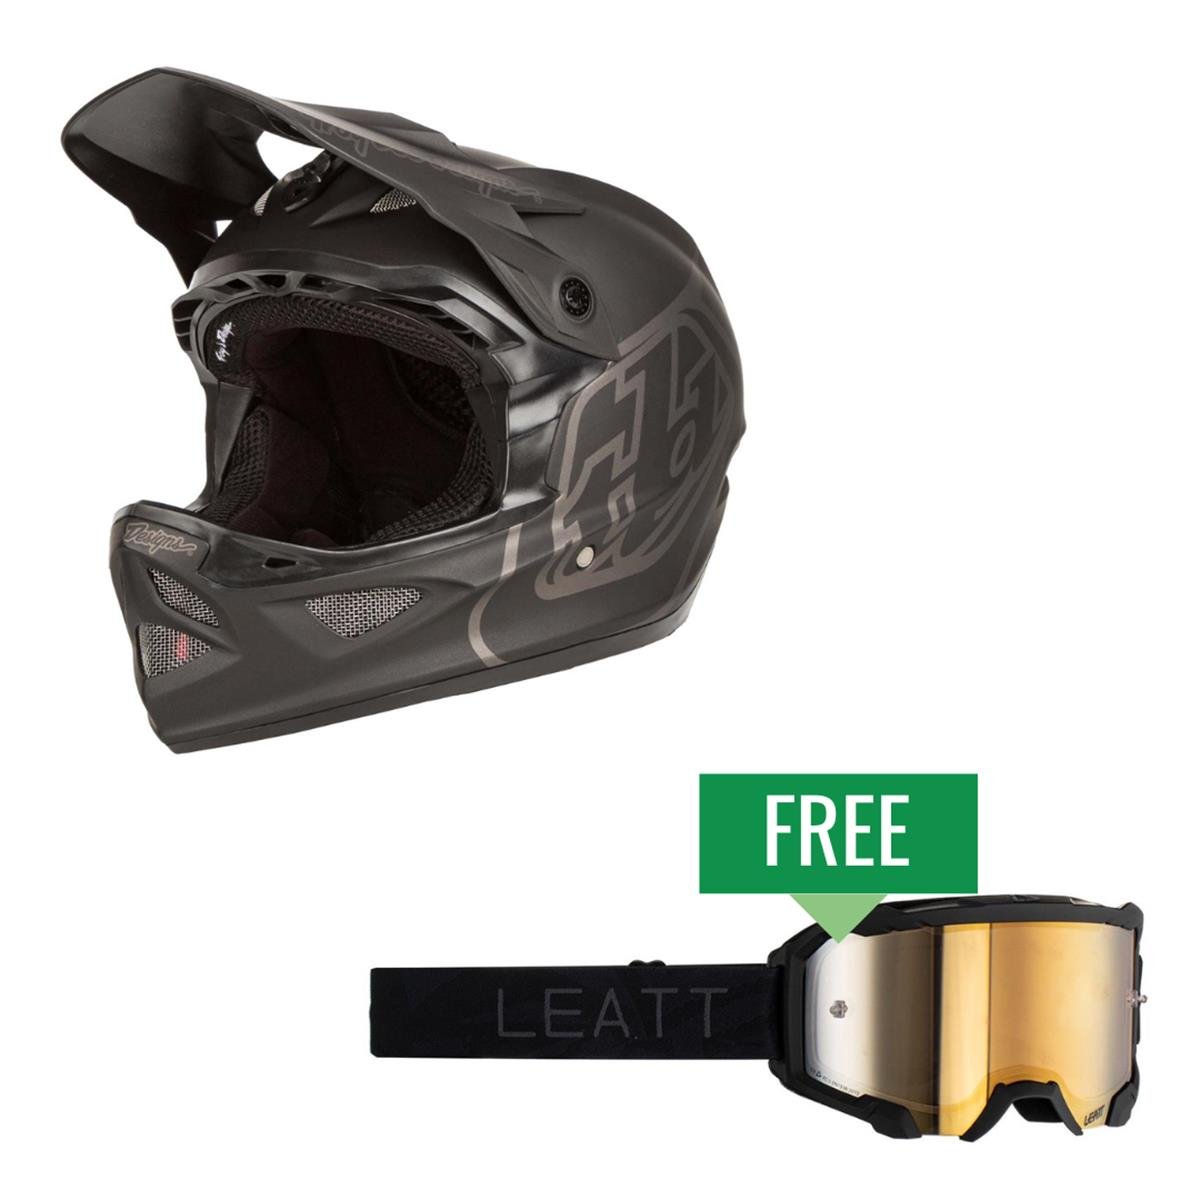 Troy Lee Designs Kit Casque Downhill D3 Fiberlite / Velocity 4.5 IRIZ Incl. lunettes de protection gratuites, Noir